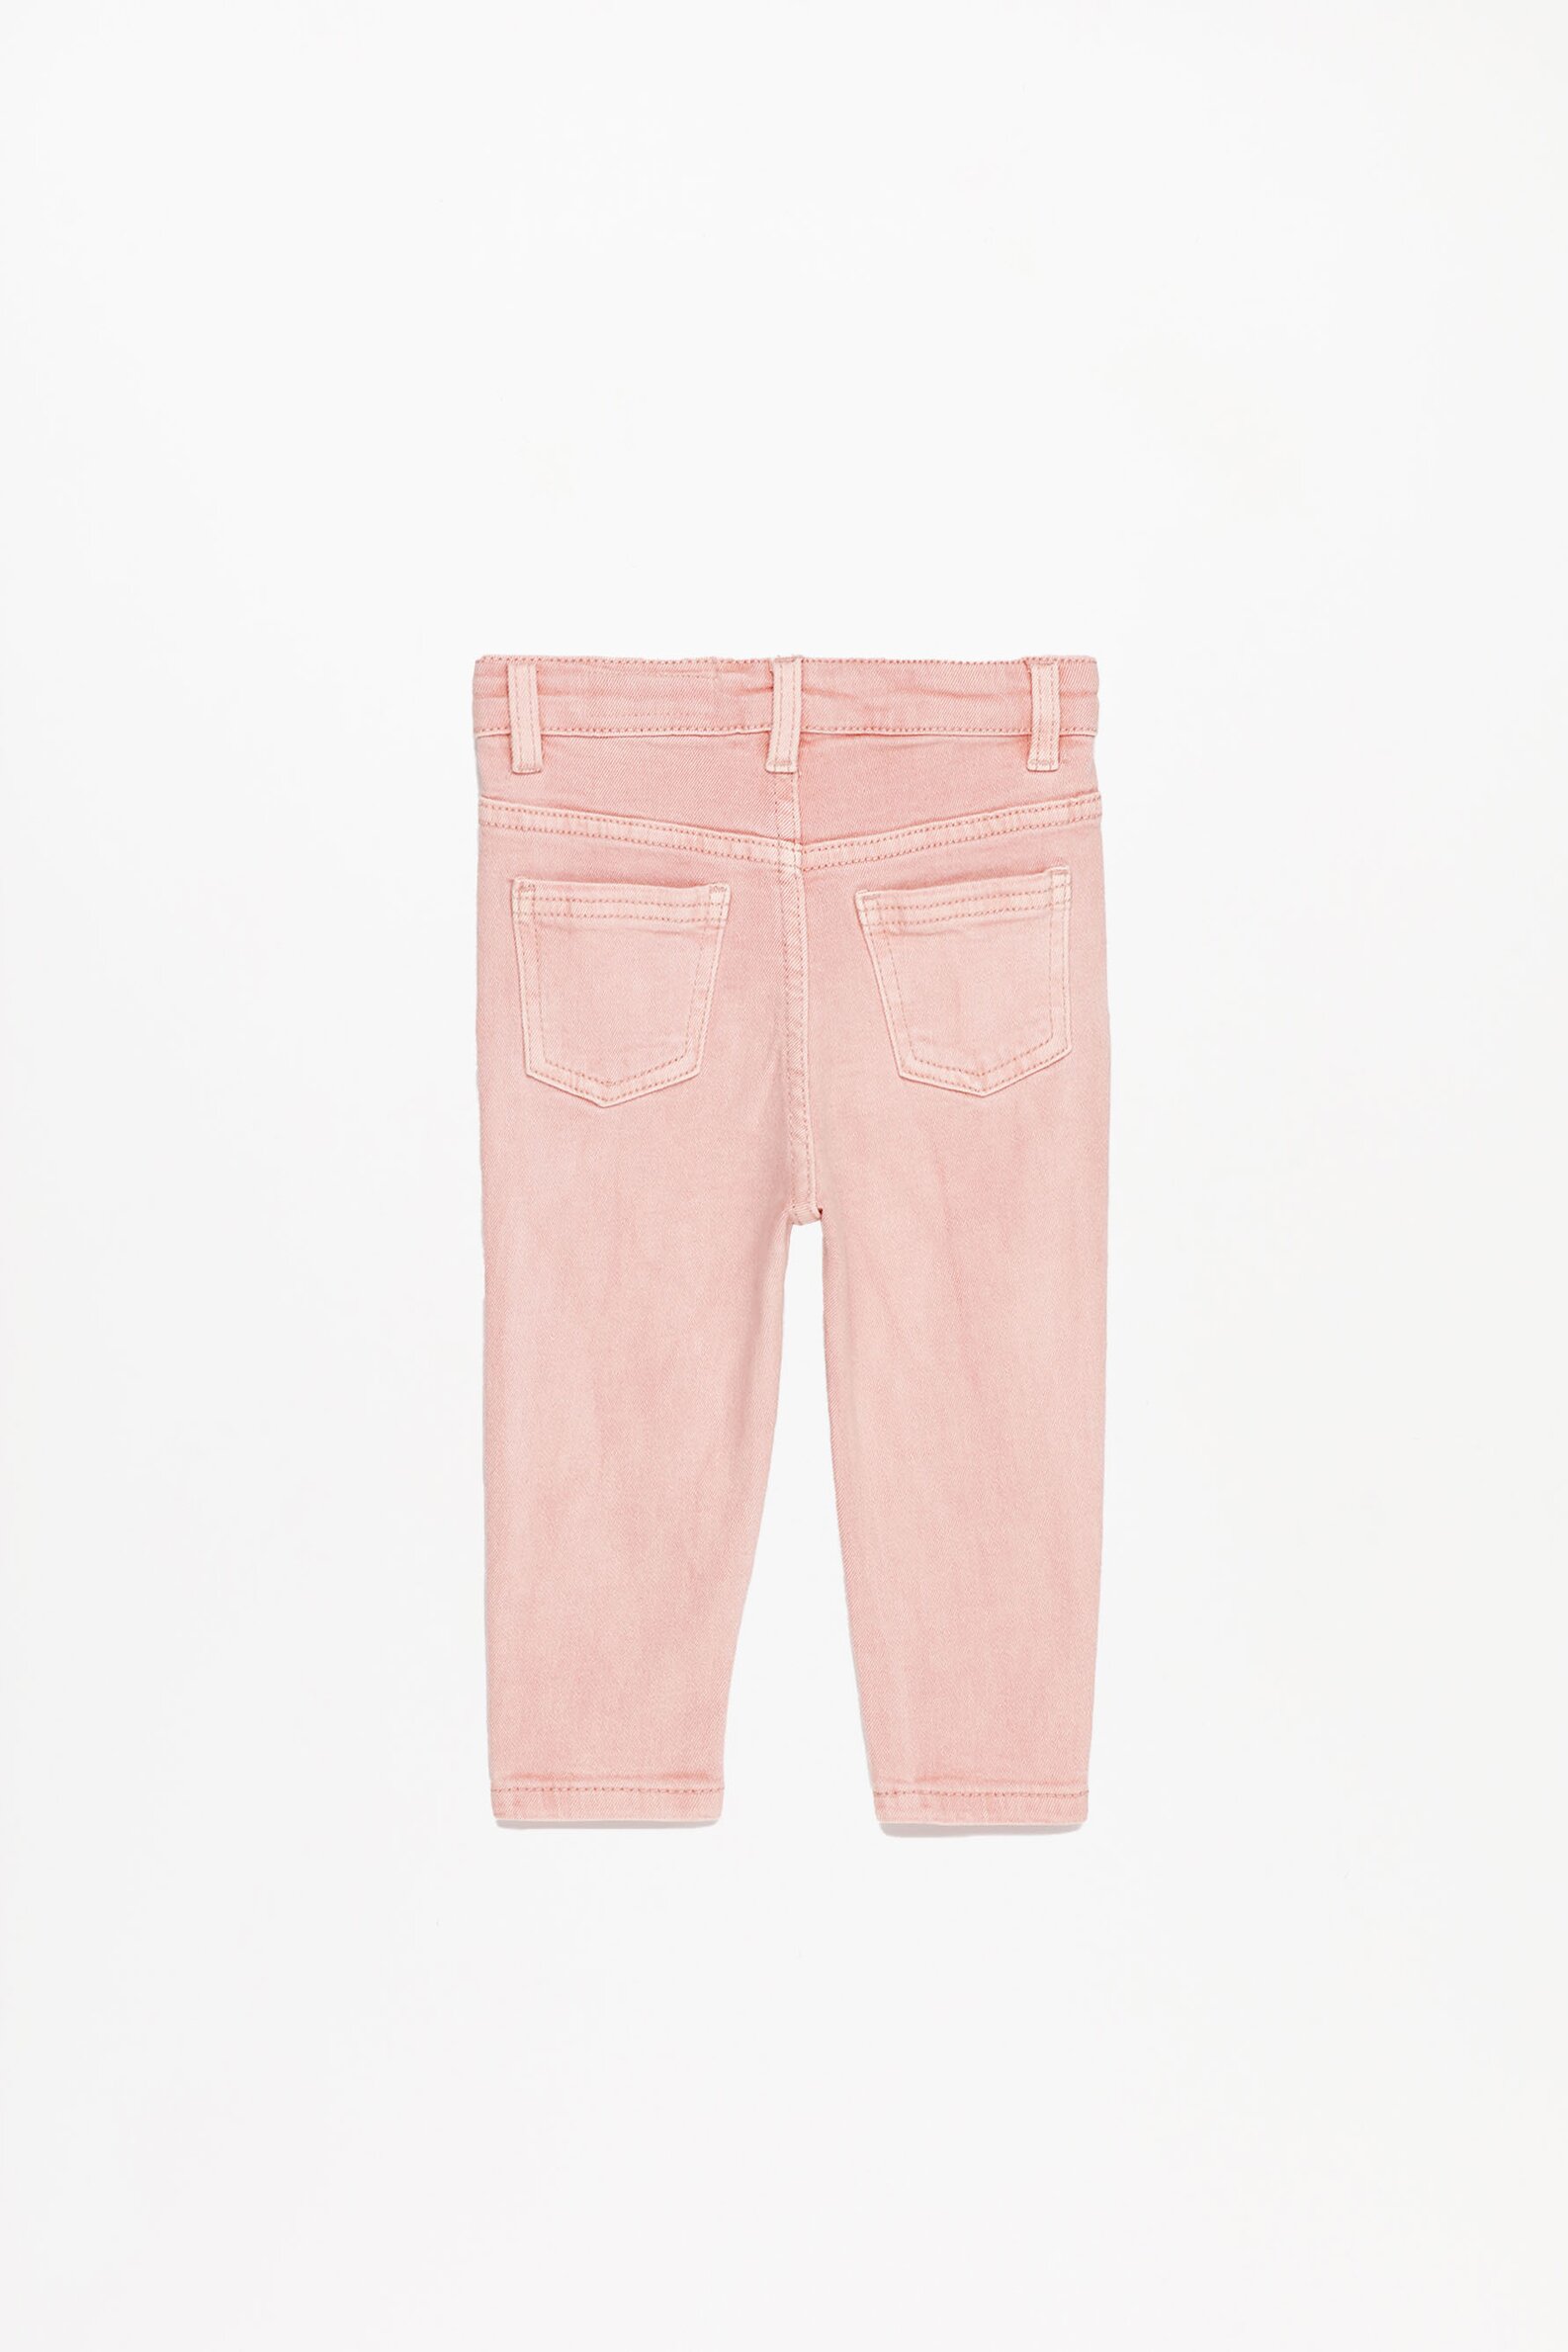 Os novos jeans cor-de-rosa da Zara que esgotaram em menos de 24